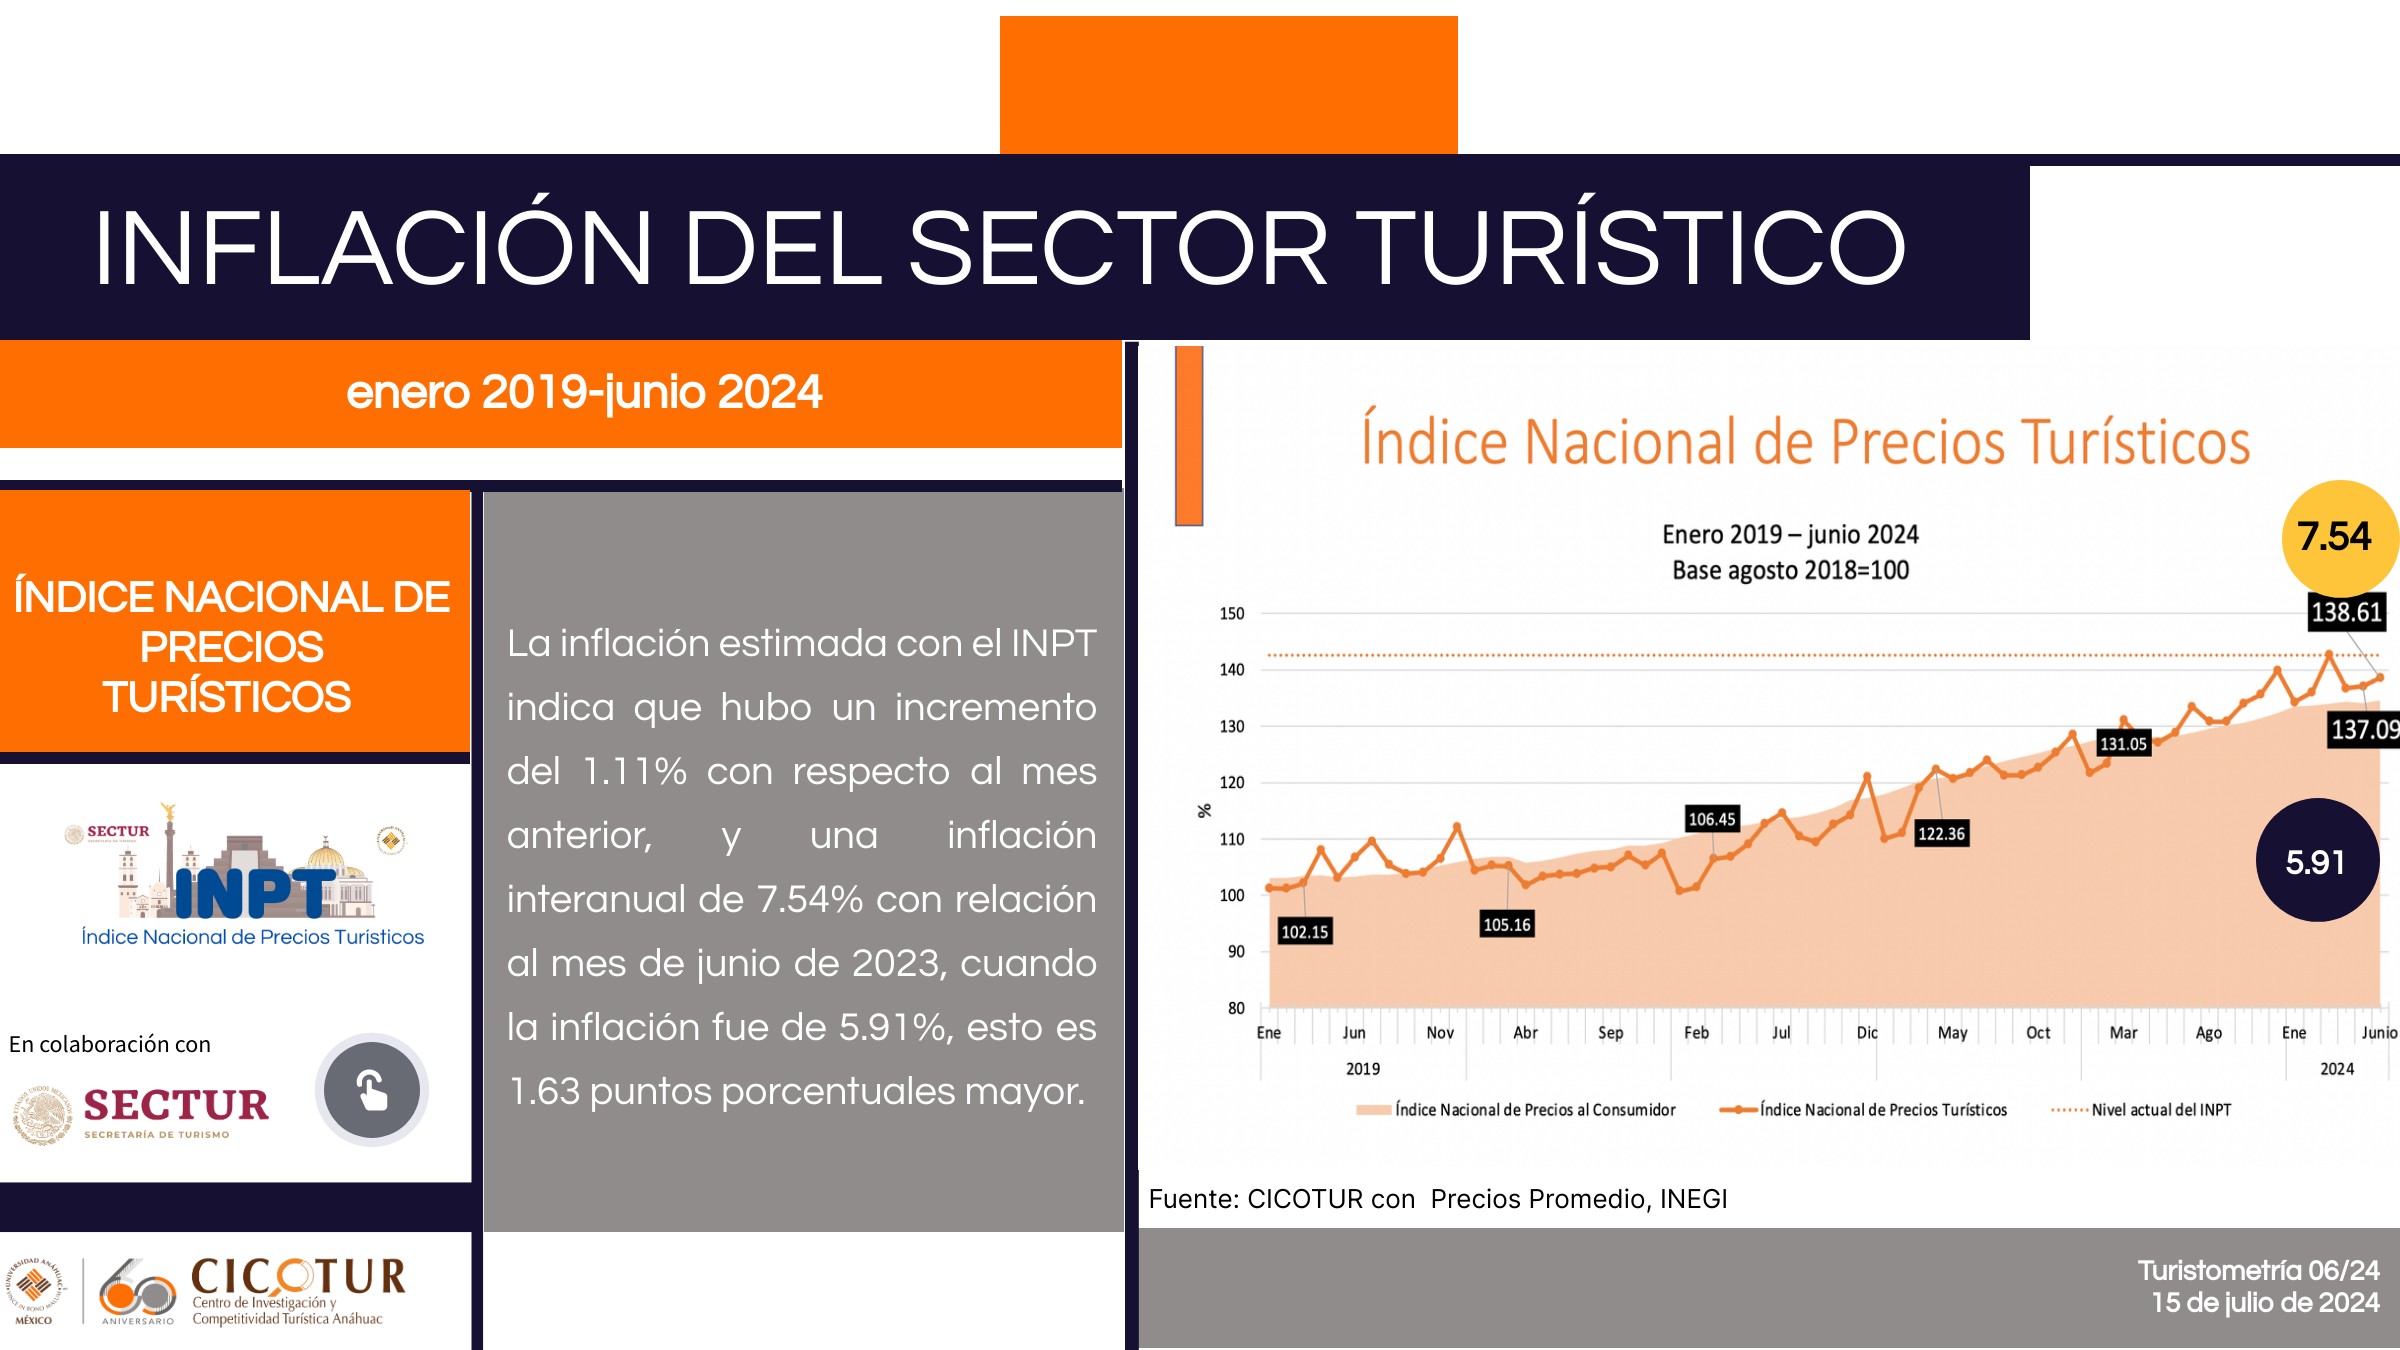 La inflación estimada con el INPT indica que hubo un incremento del 1.11% con respecto al mes anterior, y una inflación interanual de 7.54% con relación al mes de junio de 2023, cuando la inflación fue de 5.91%, esto es 1.63 puntos porcentuales mayor.